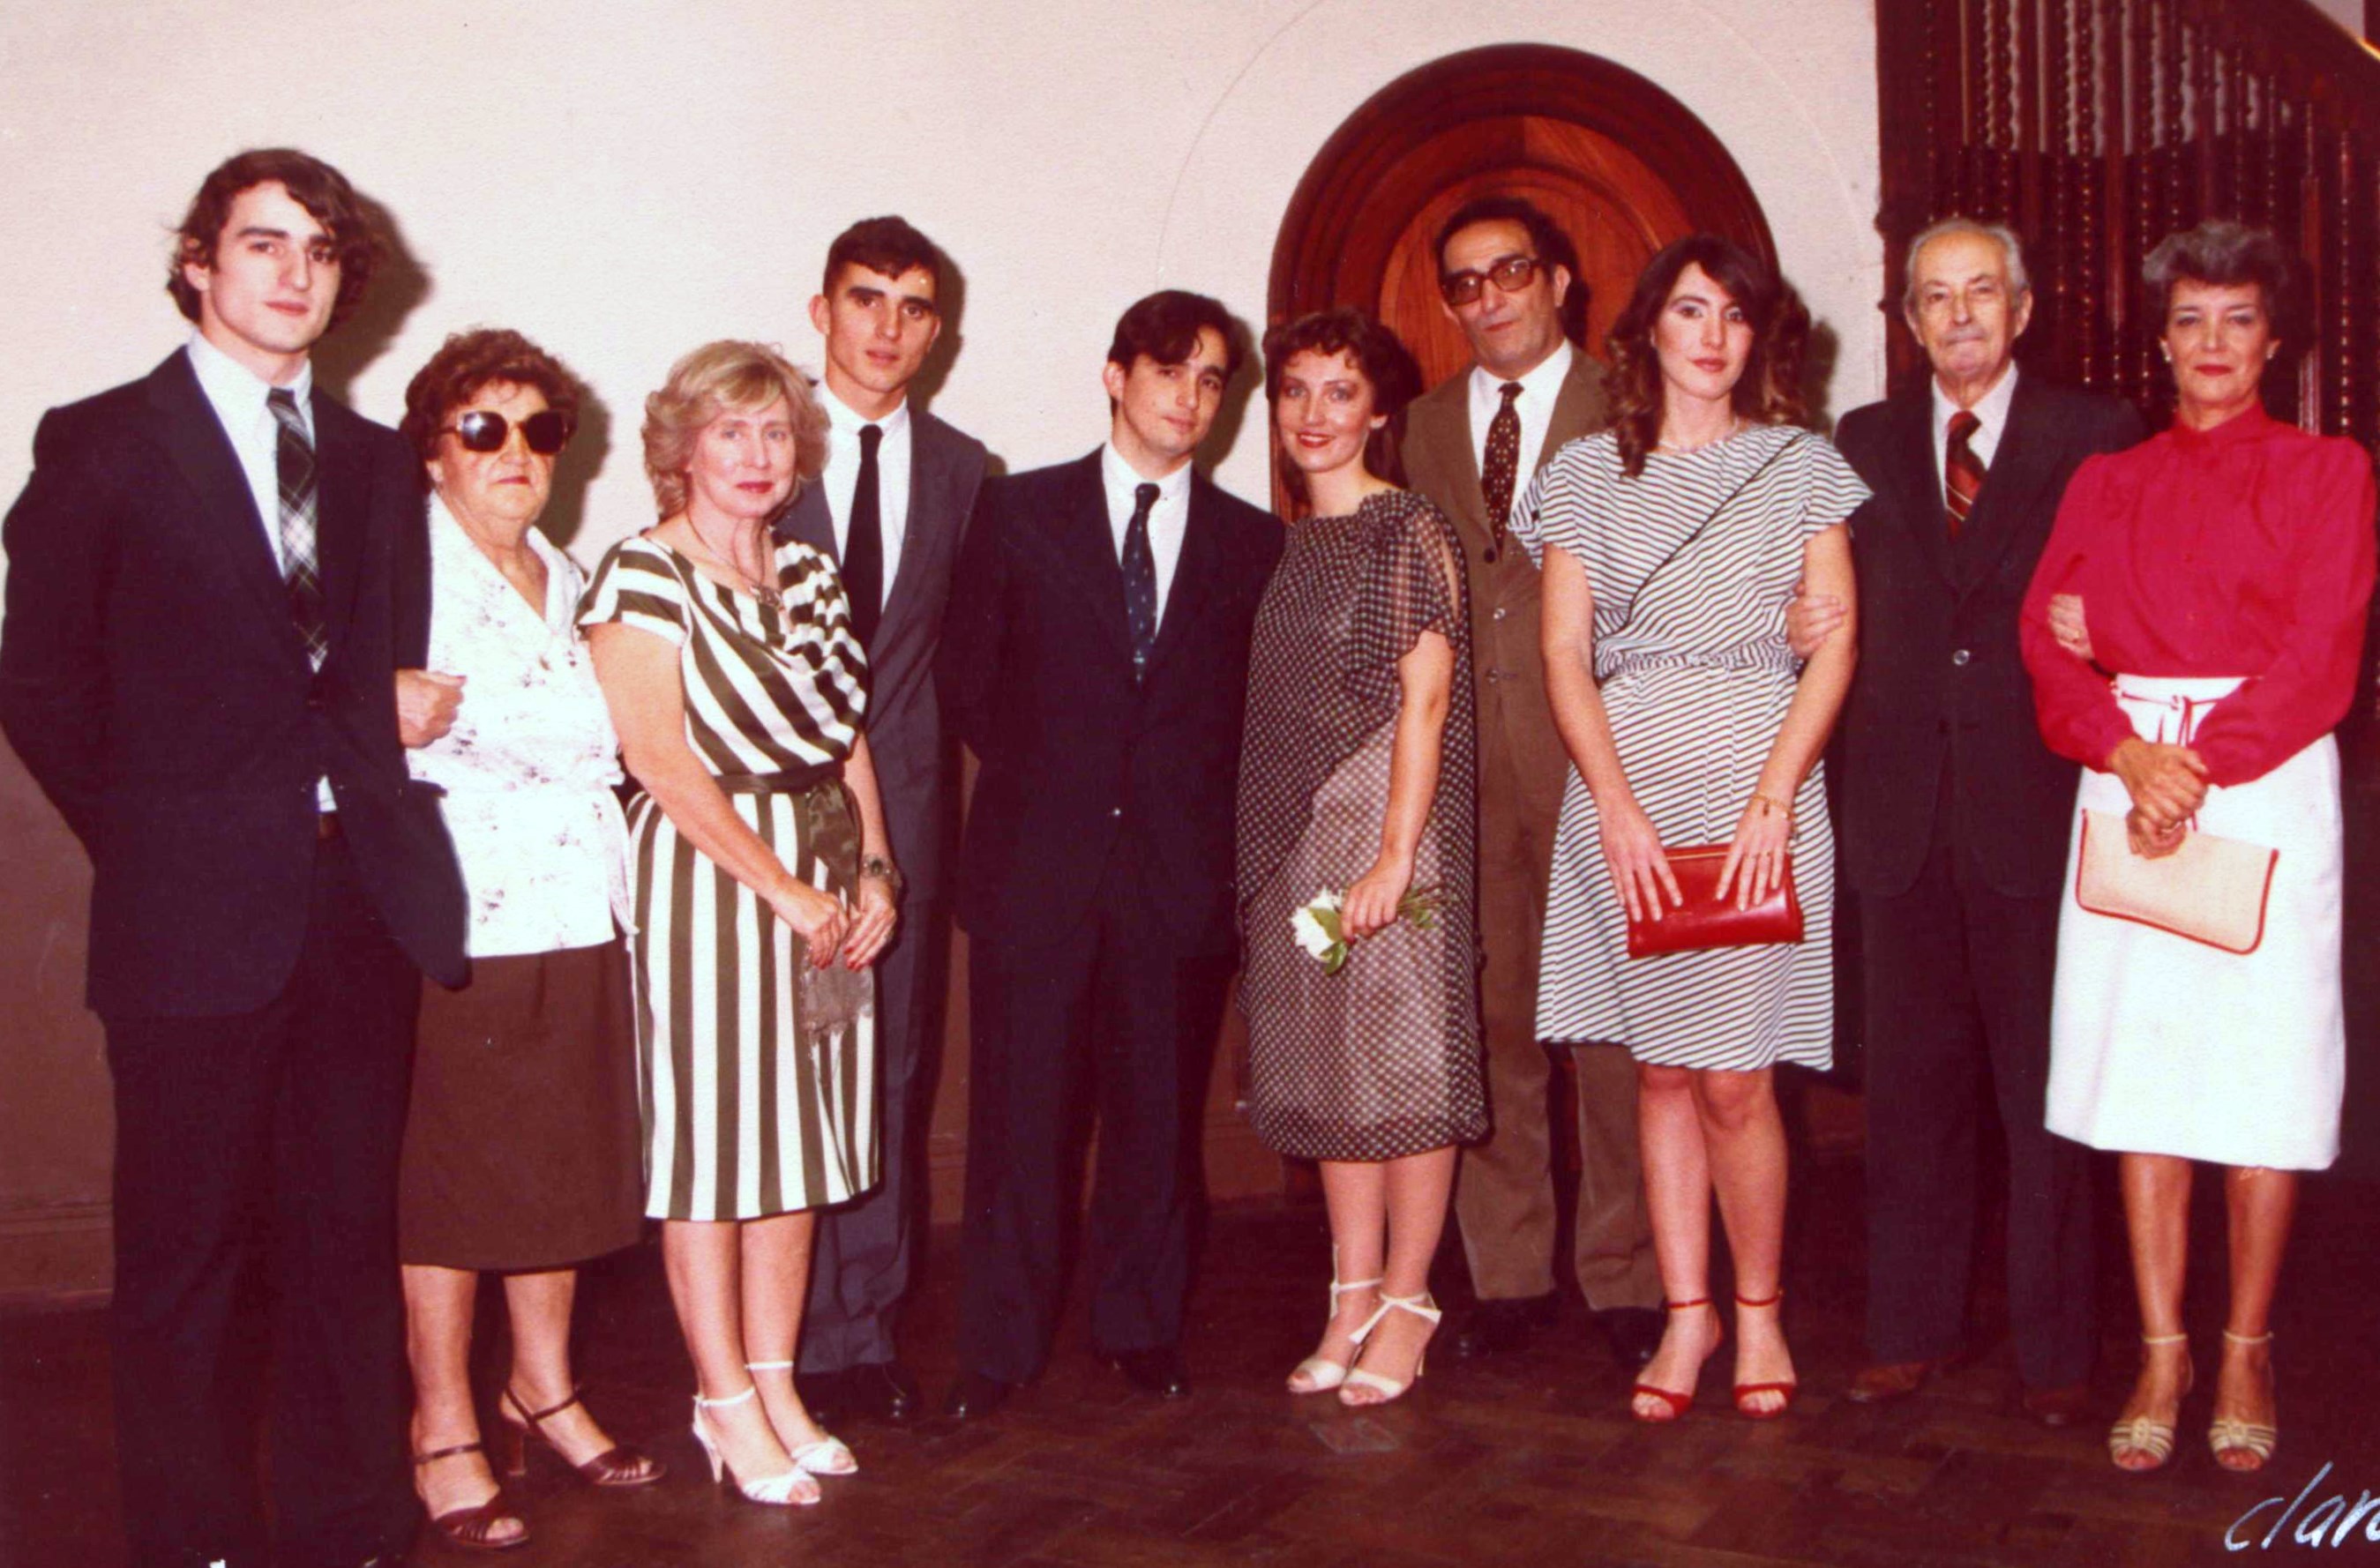 [My family in 1984]